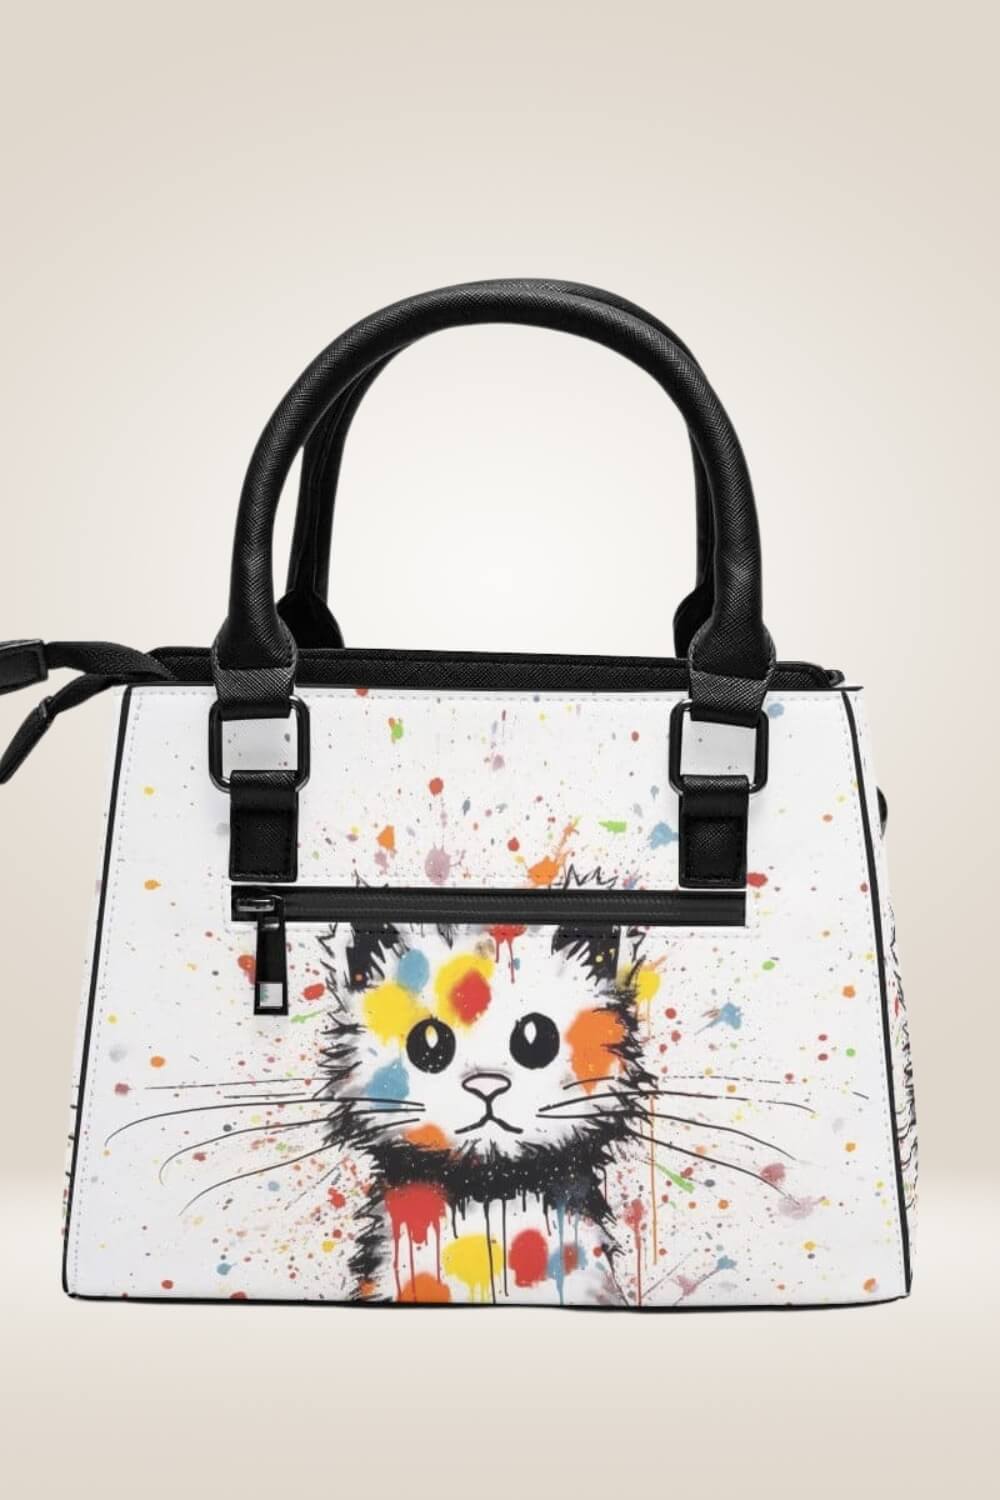 Graffiti Cat Faux Leather Shoulder Bag - TGC Boutique - Shoulder Bag